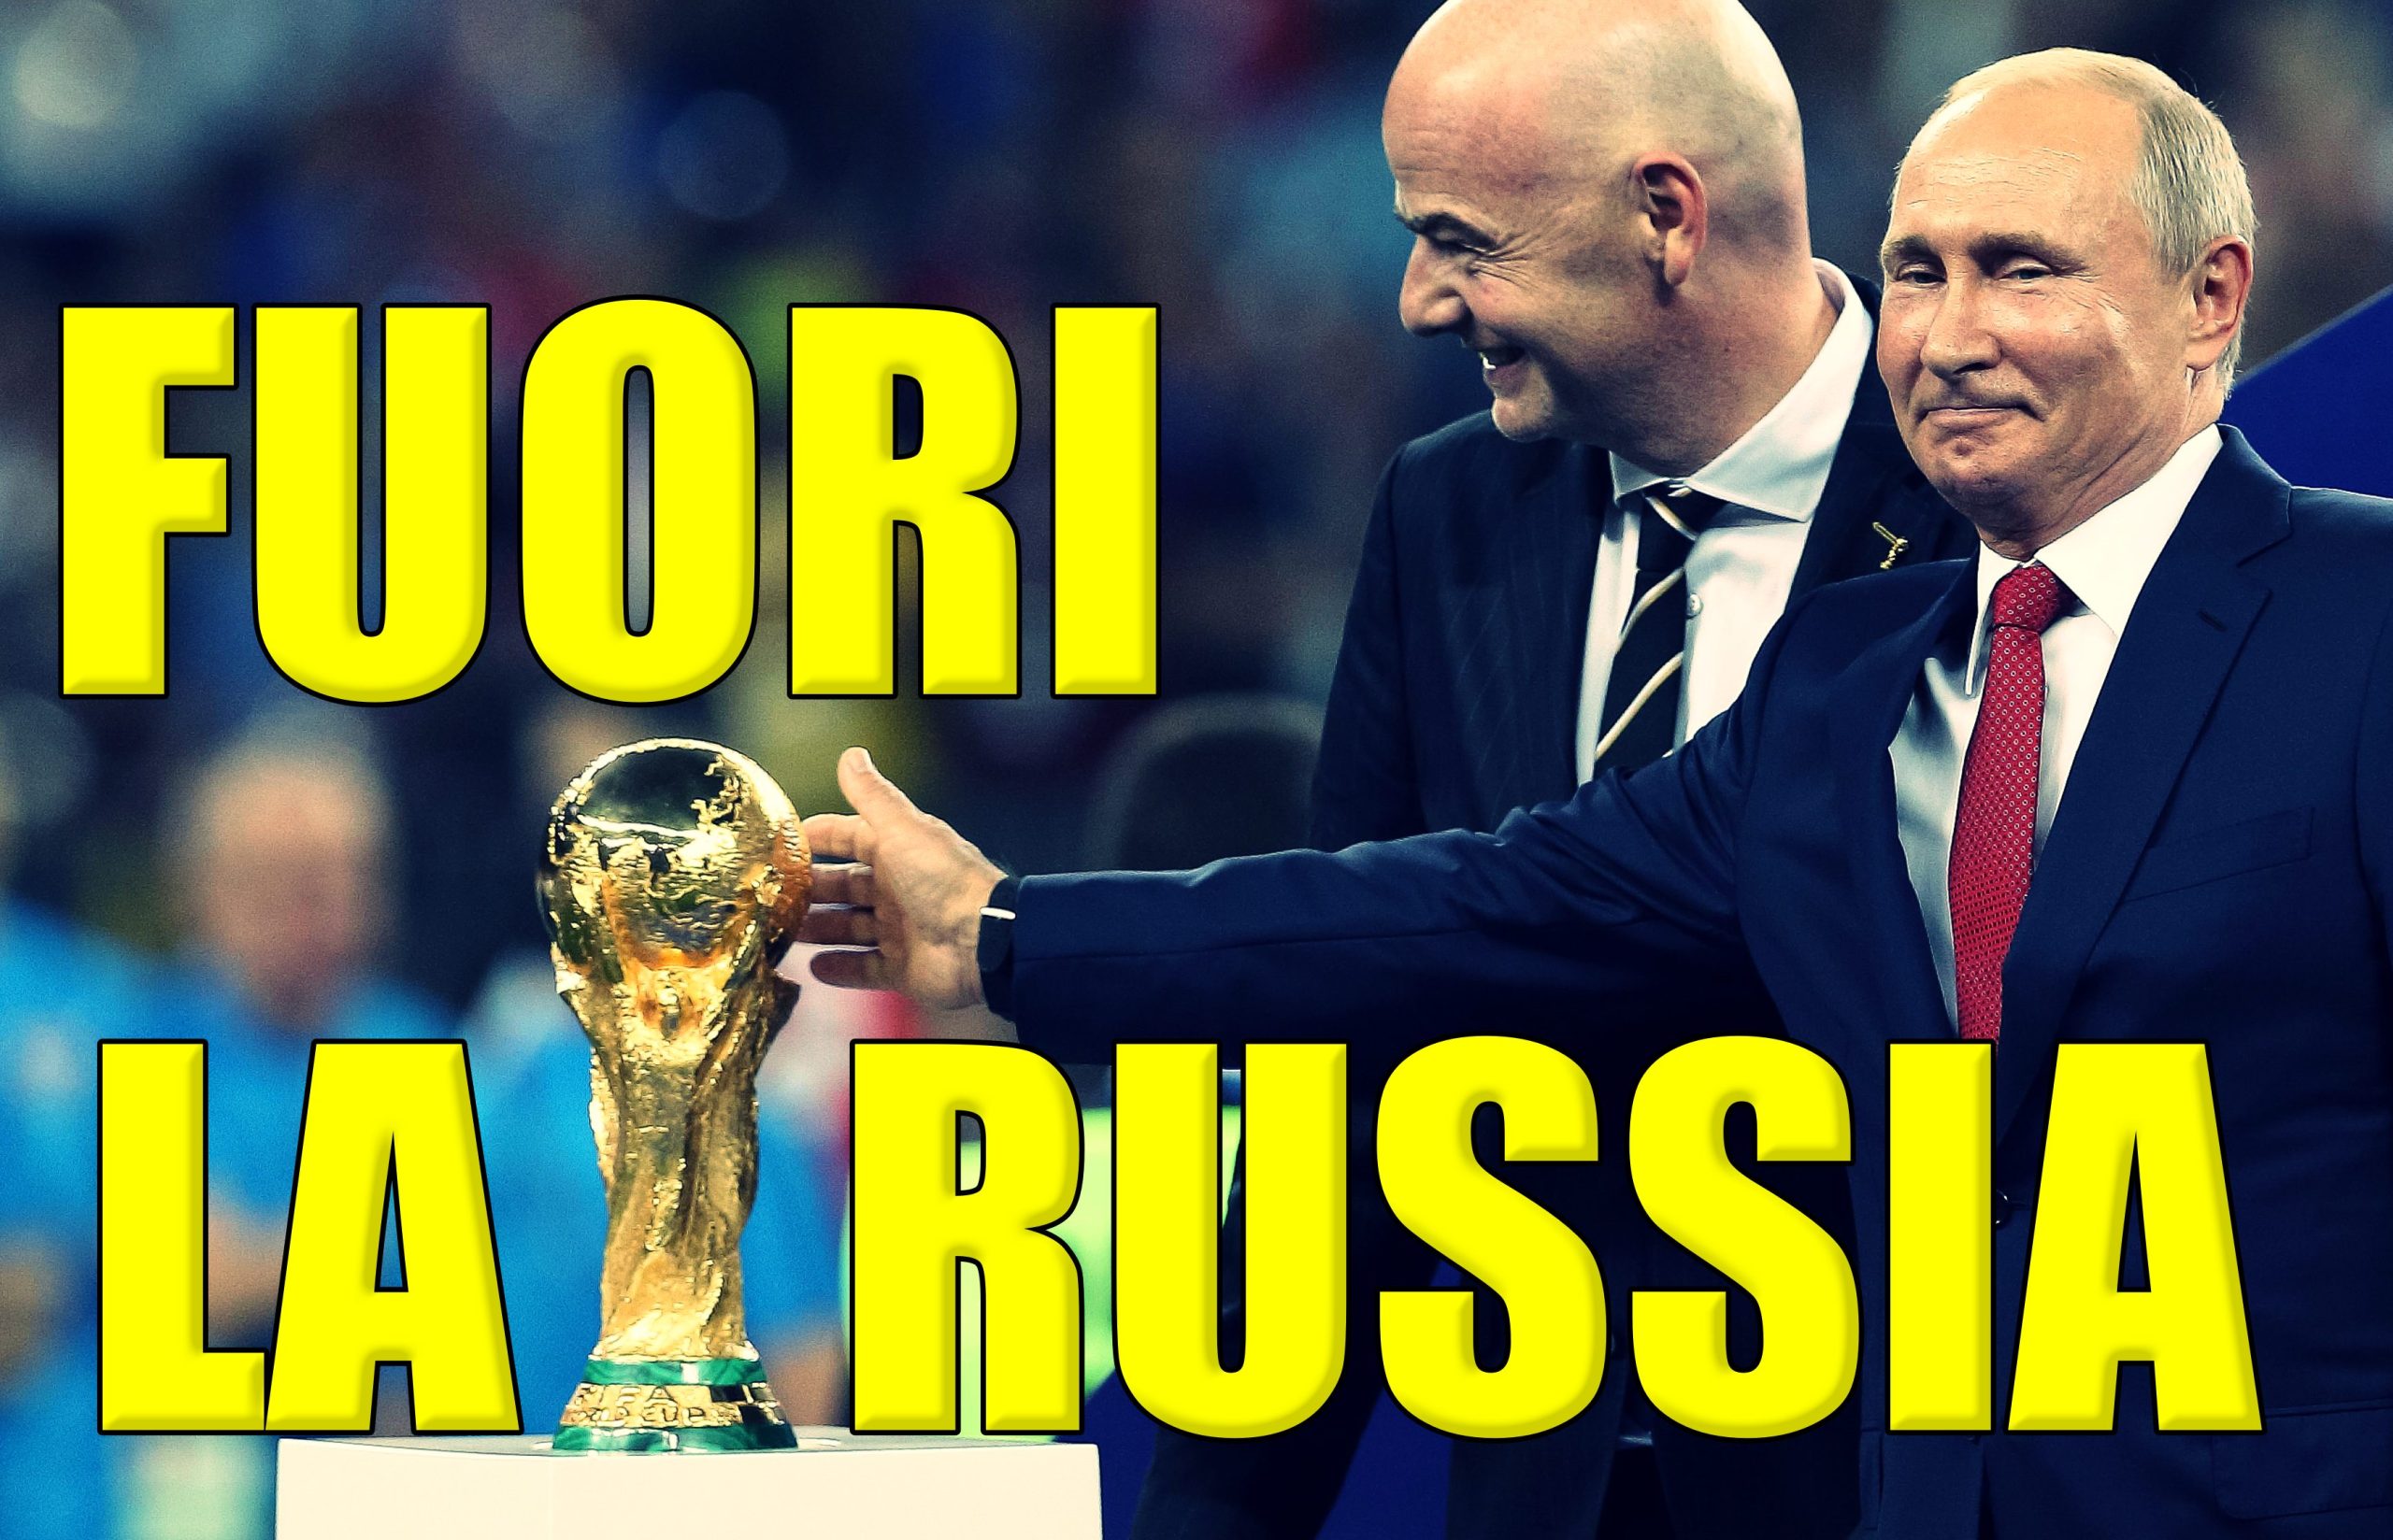 La Fifa esclude la nazionale russa dai play off mondiali